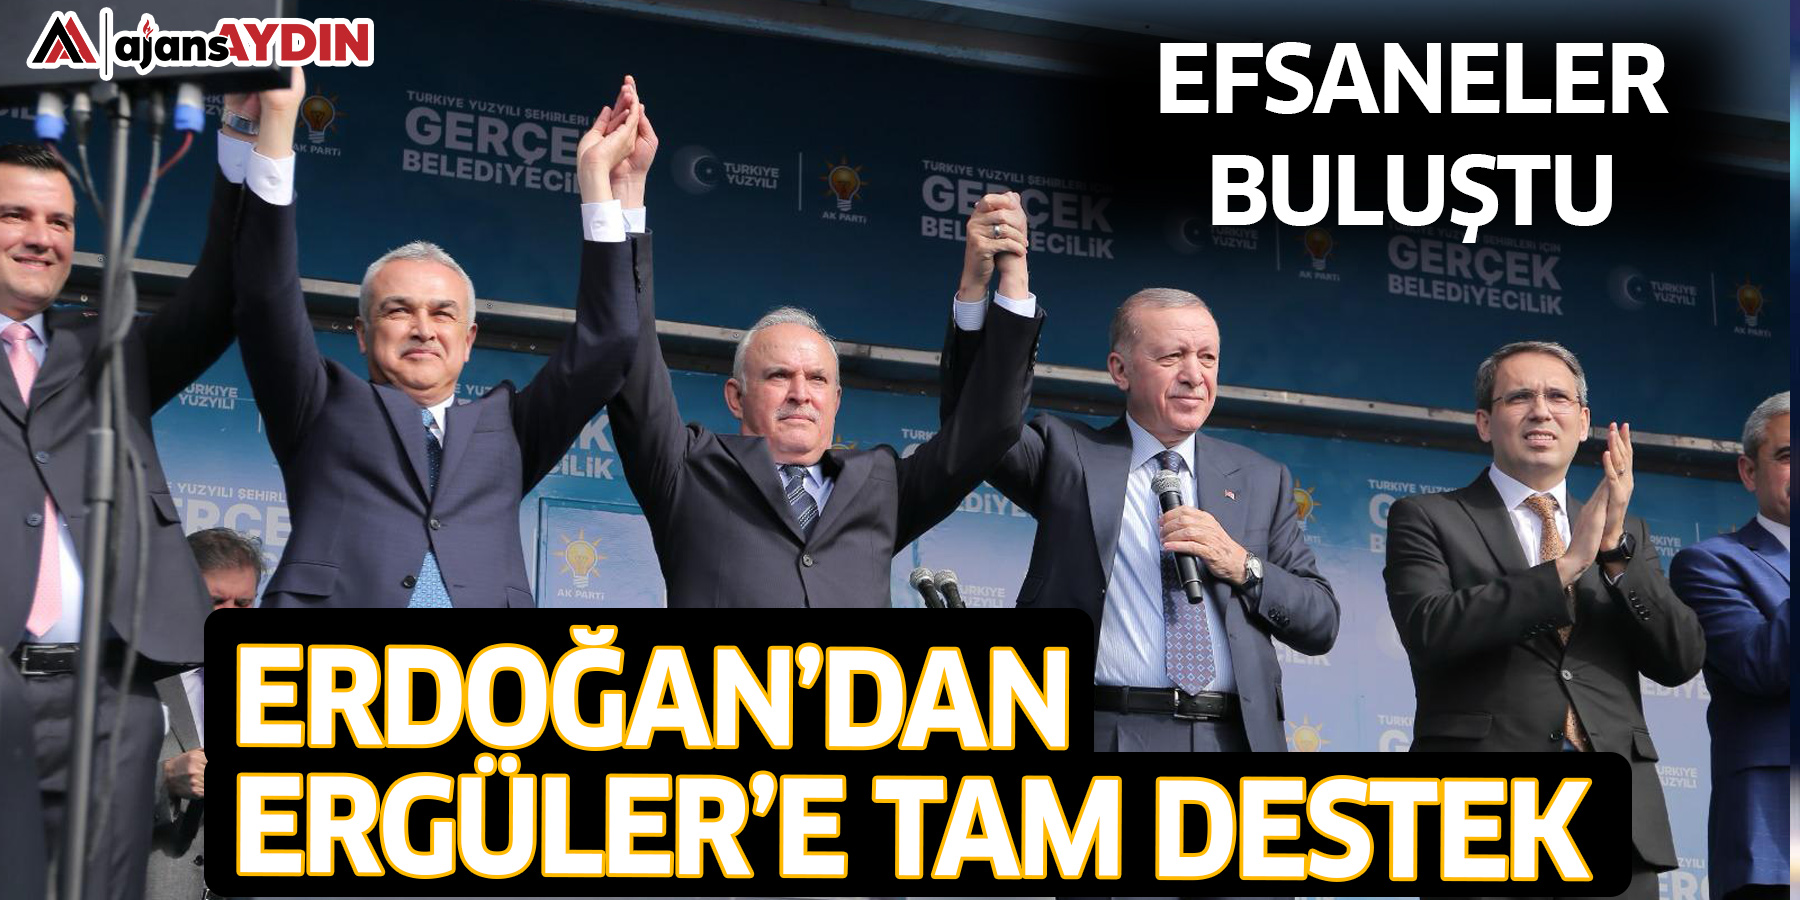 Efsaneler buluştu; Erdoğan’dan Ergüler’e tam destek